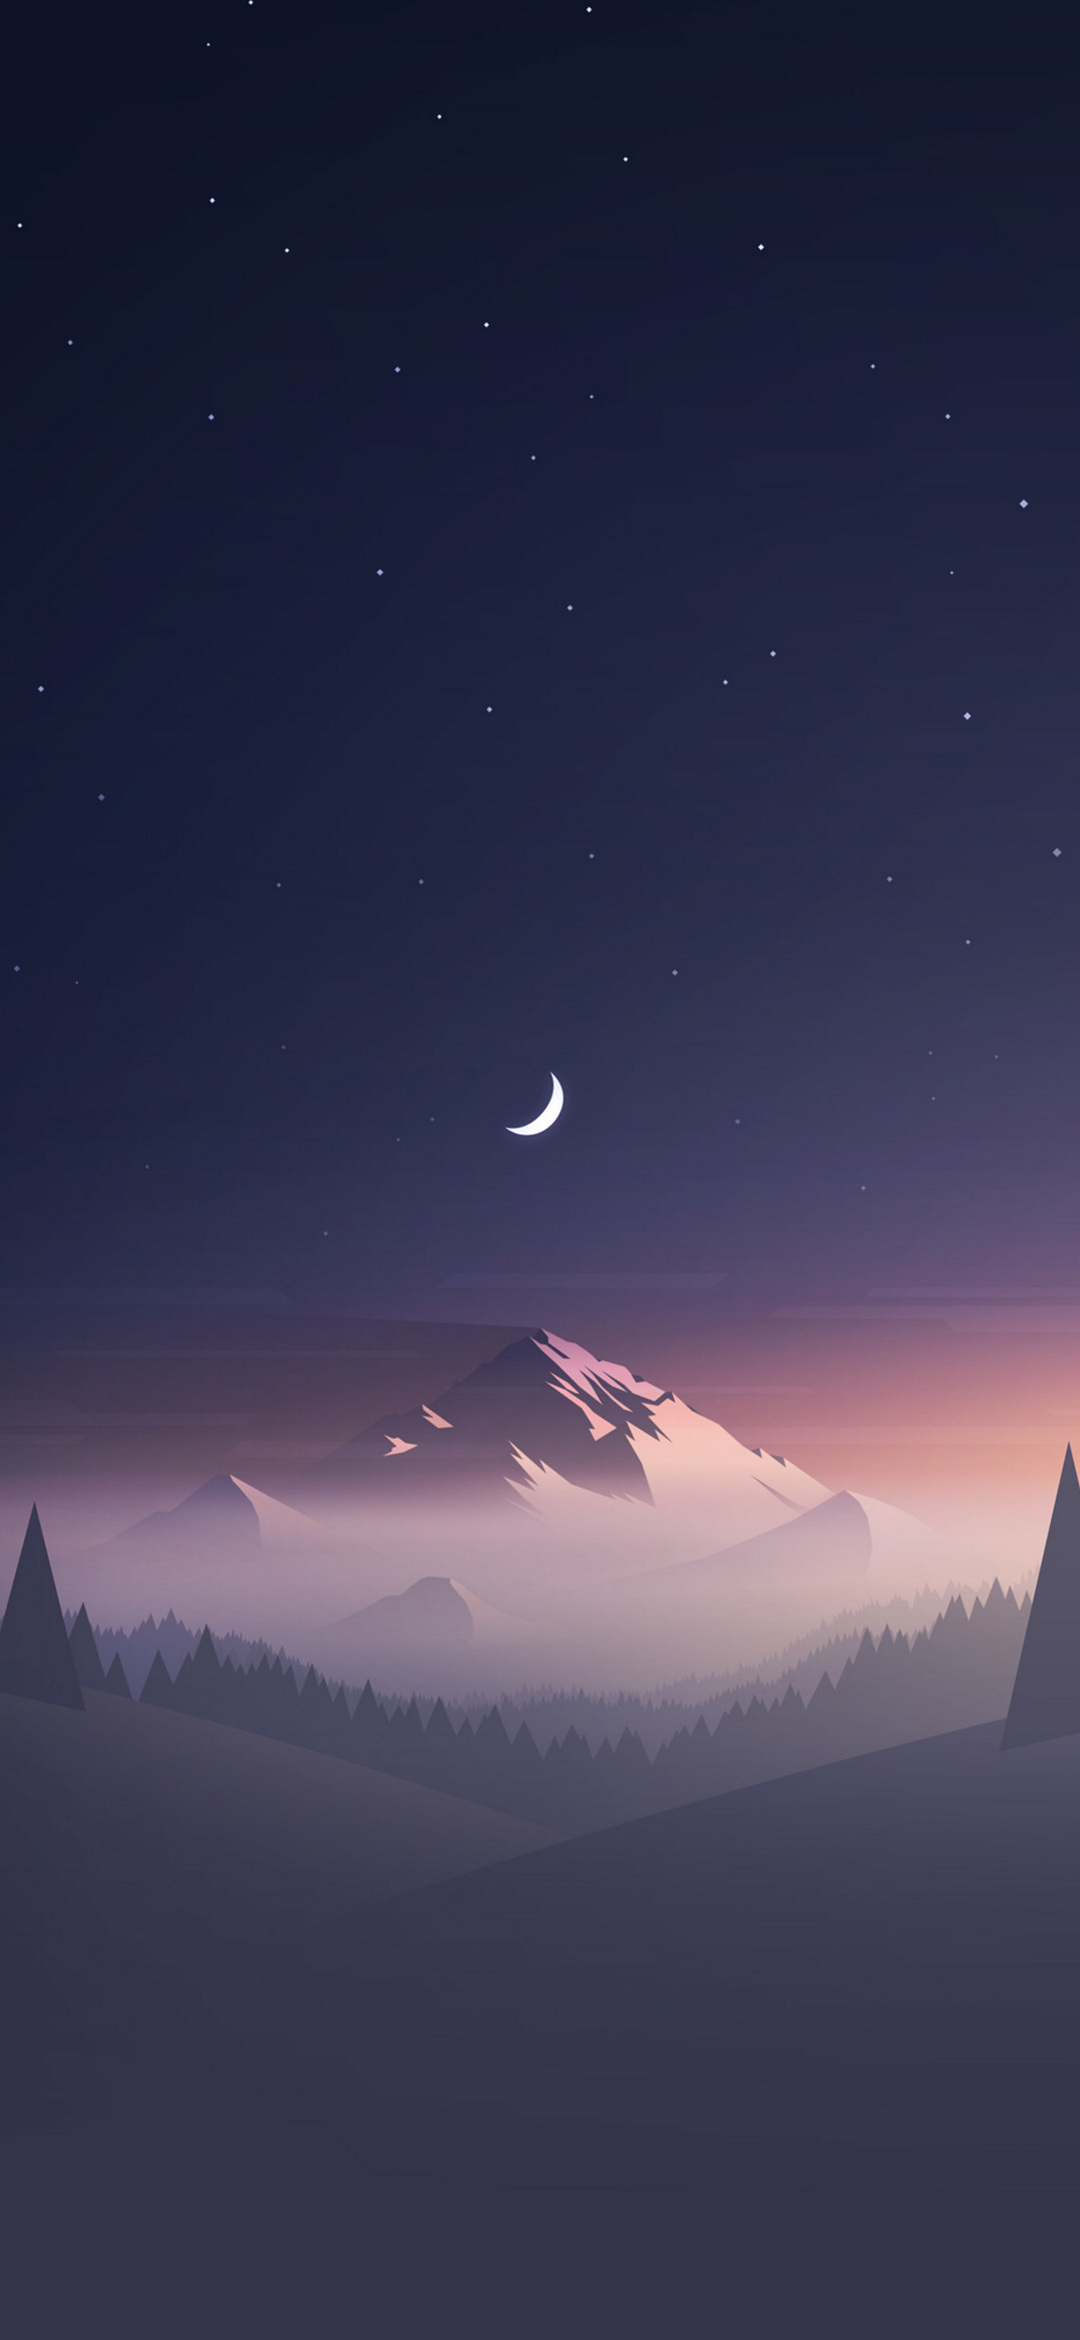 月と星空と雪山のイラスト Libero 5g Androidスマホ壁紙 待ち受け スマラン